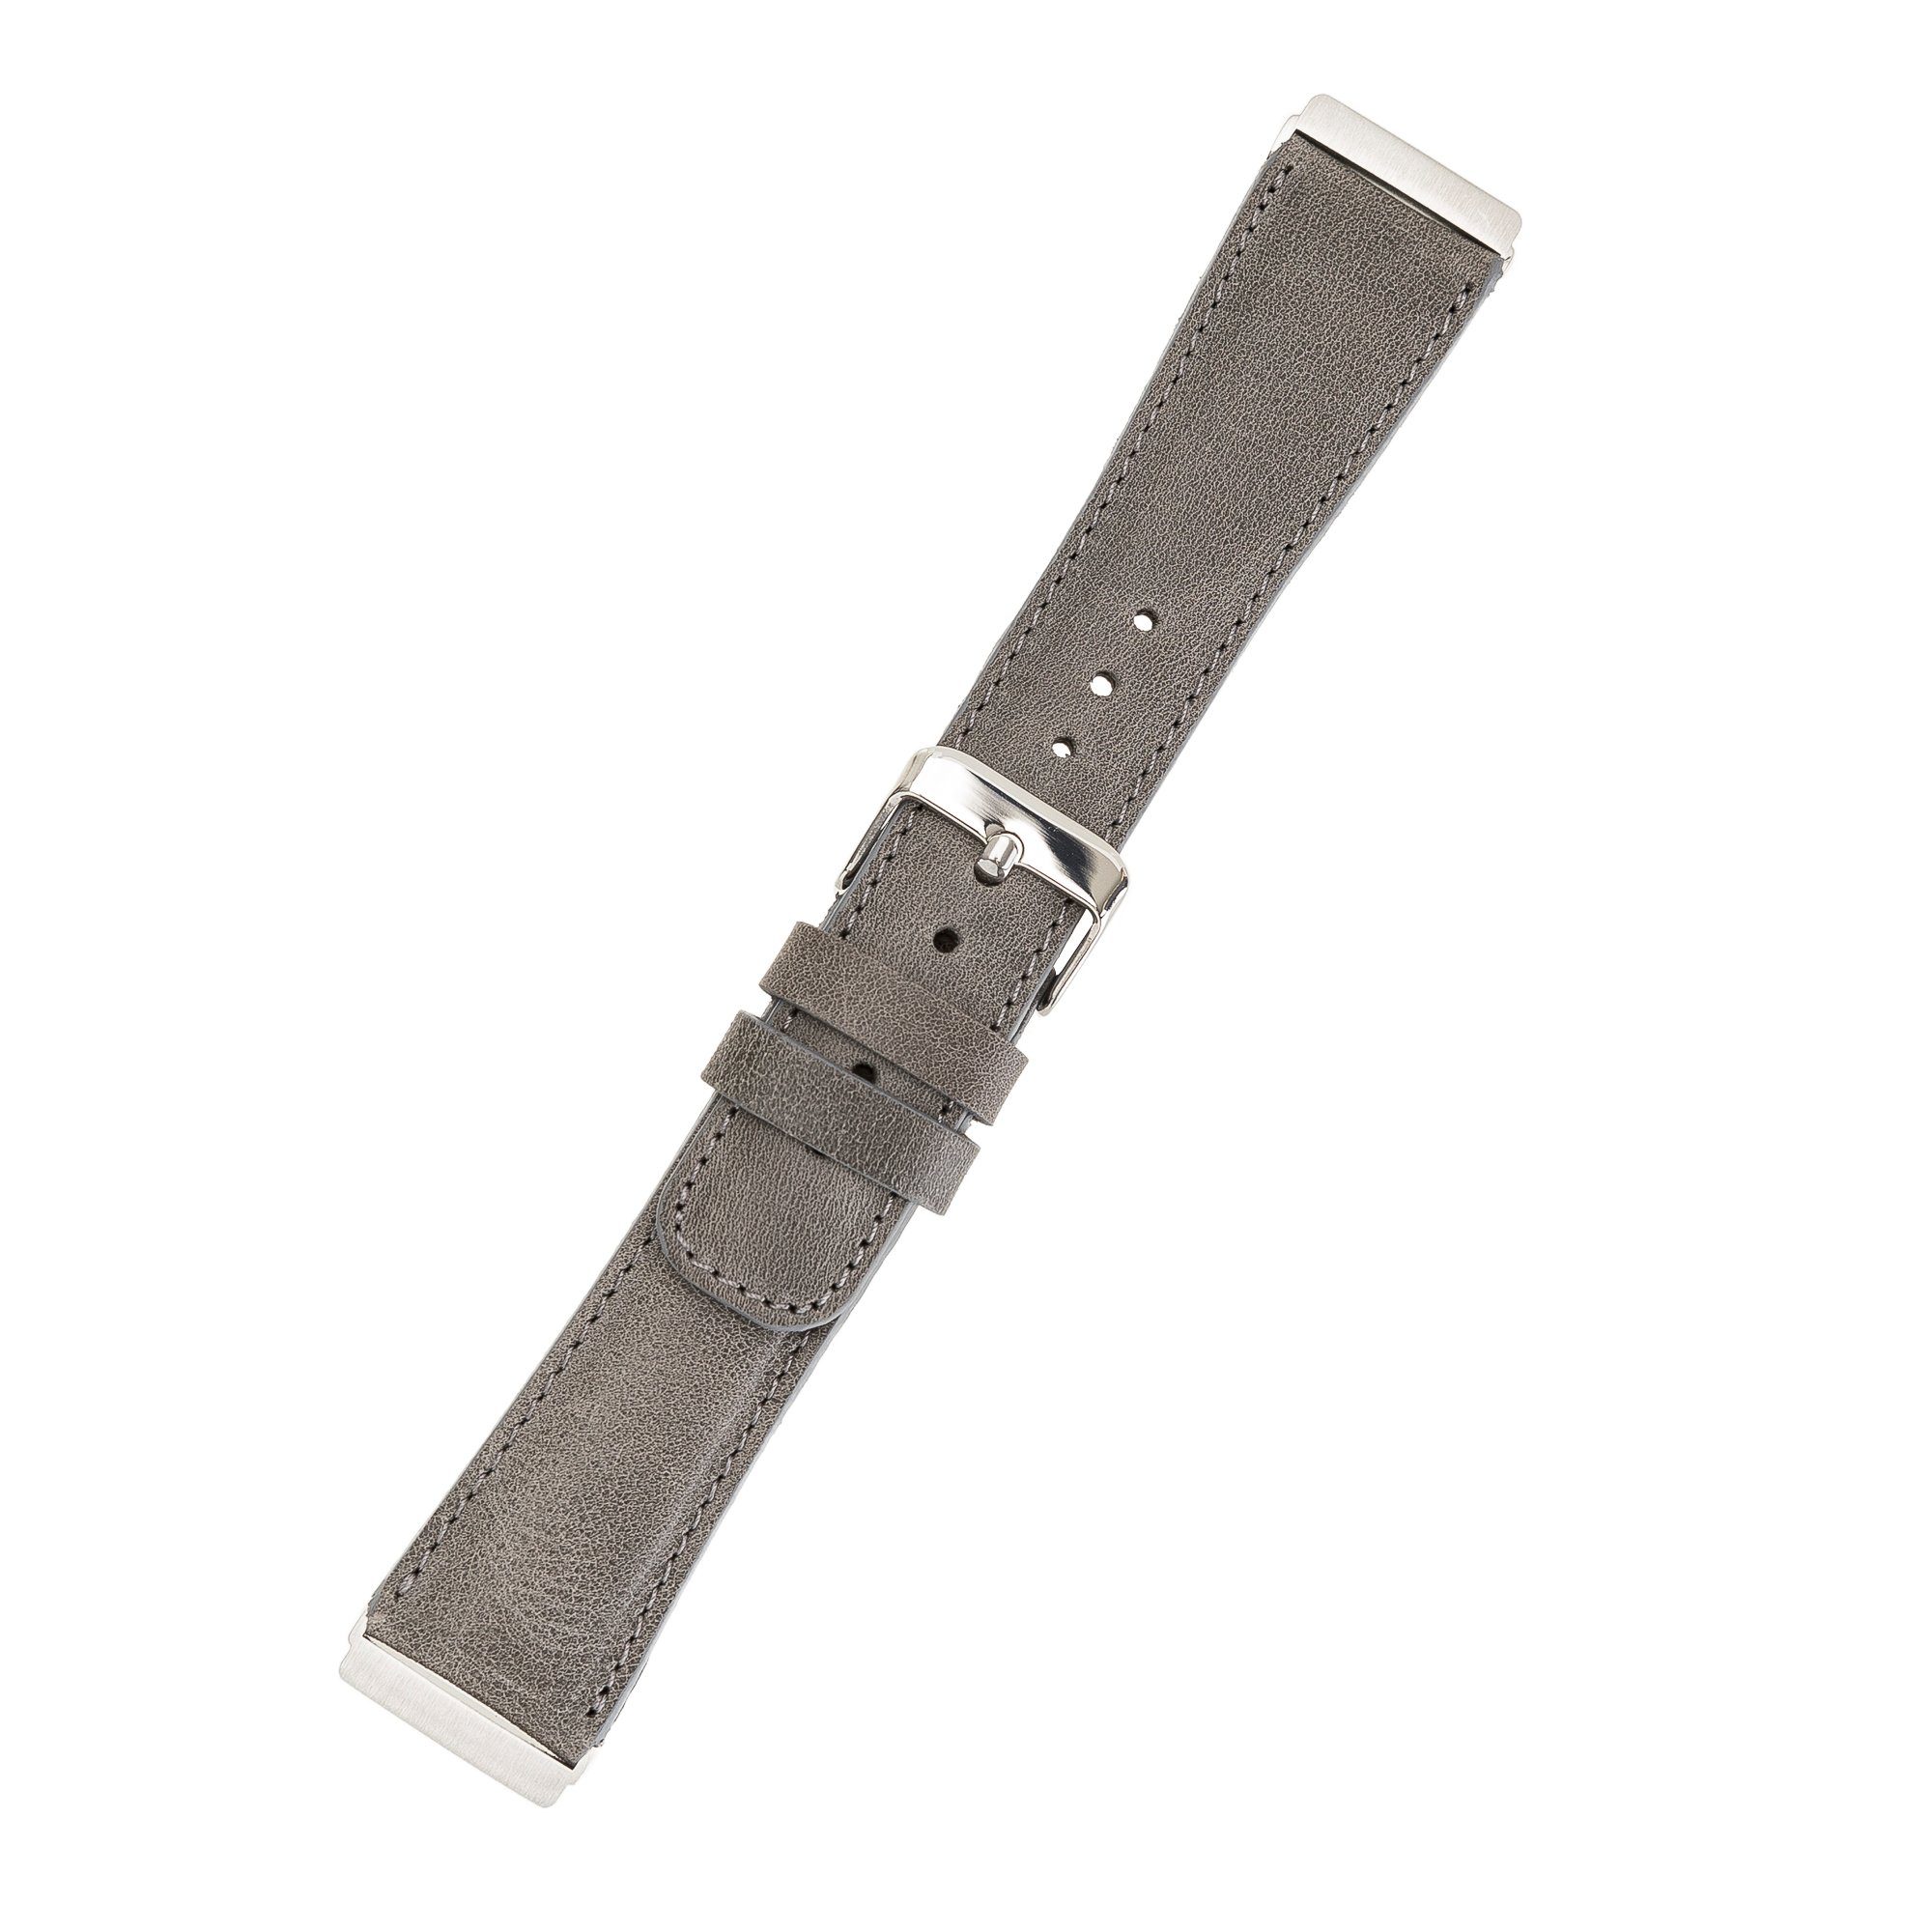 Sense Armband Echtes / Versa & 4 Grau Leder Fitbit 3 Smartwatch-Armband 2 Ersatzarmband / Renna Leather